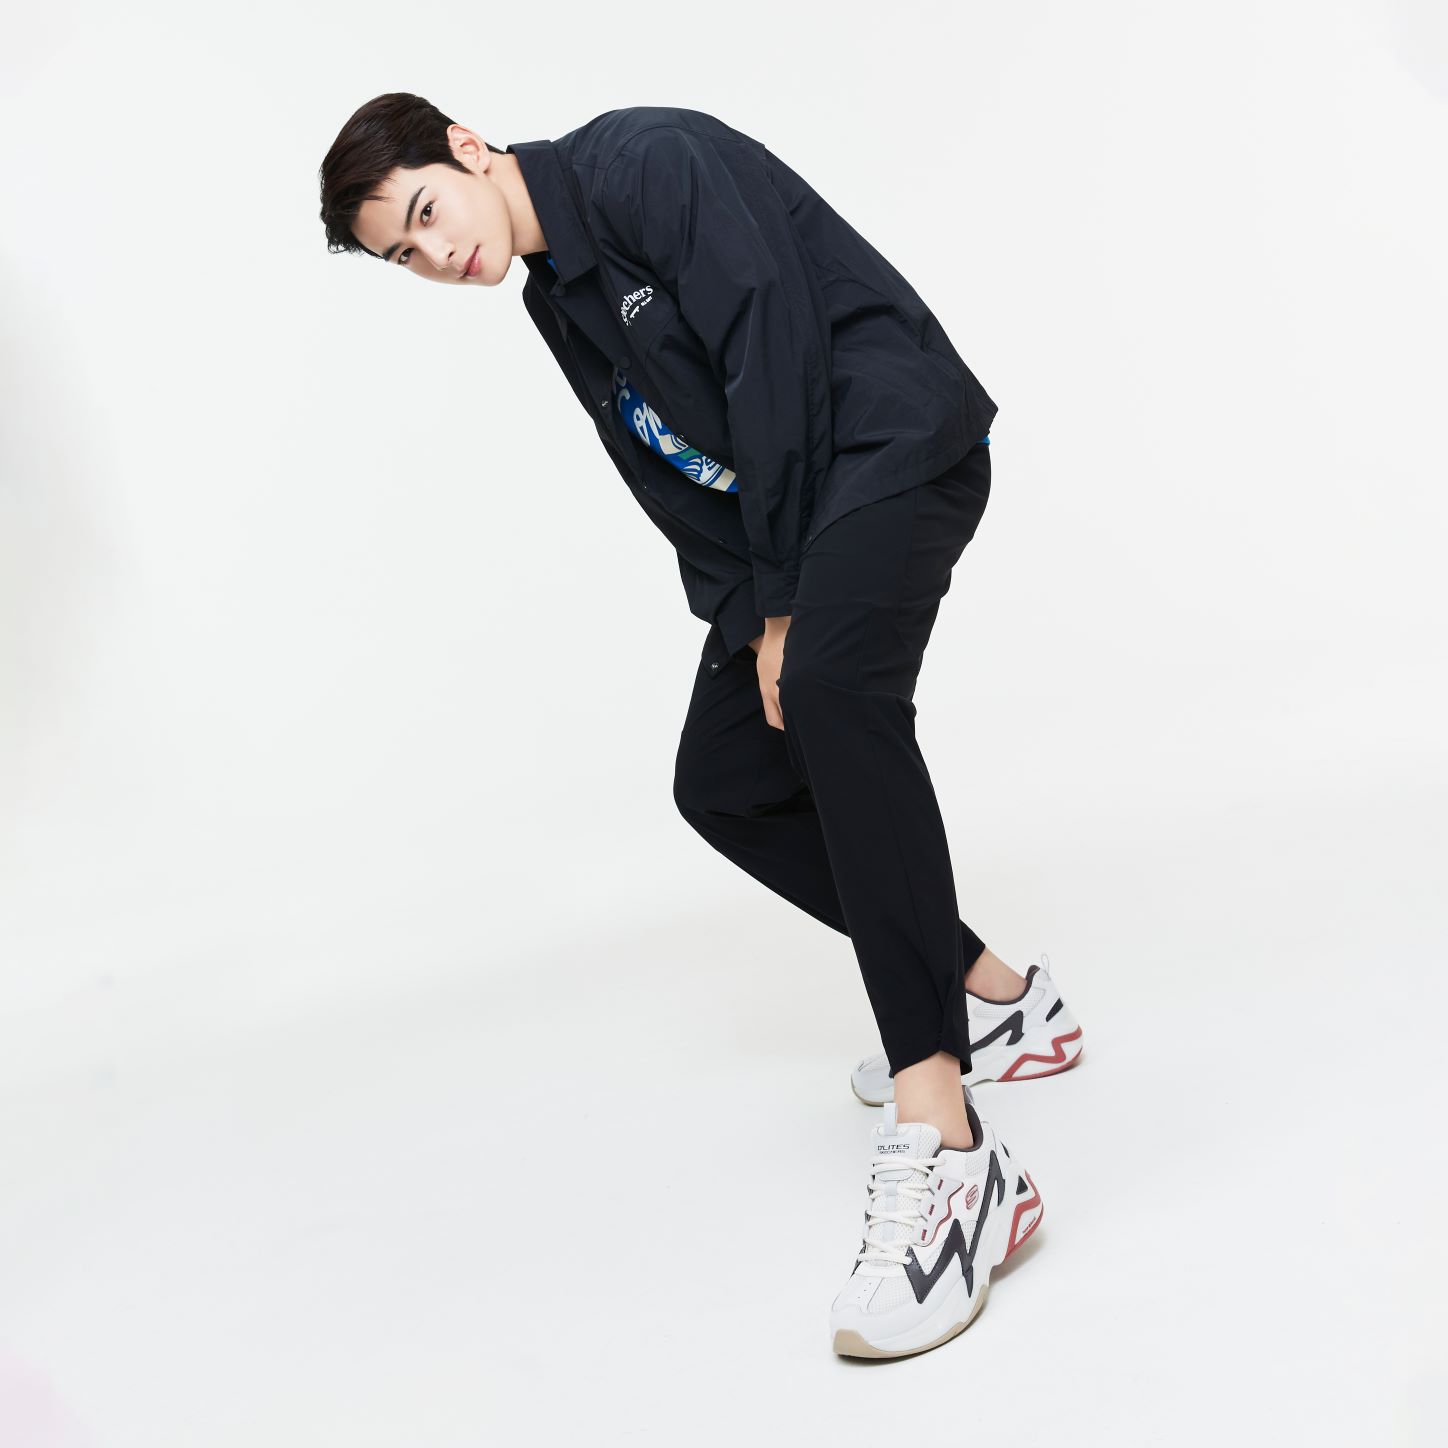 Skechers names Cha Eun-Woo as ambassador